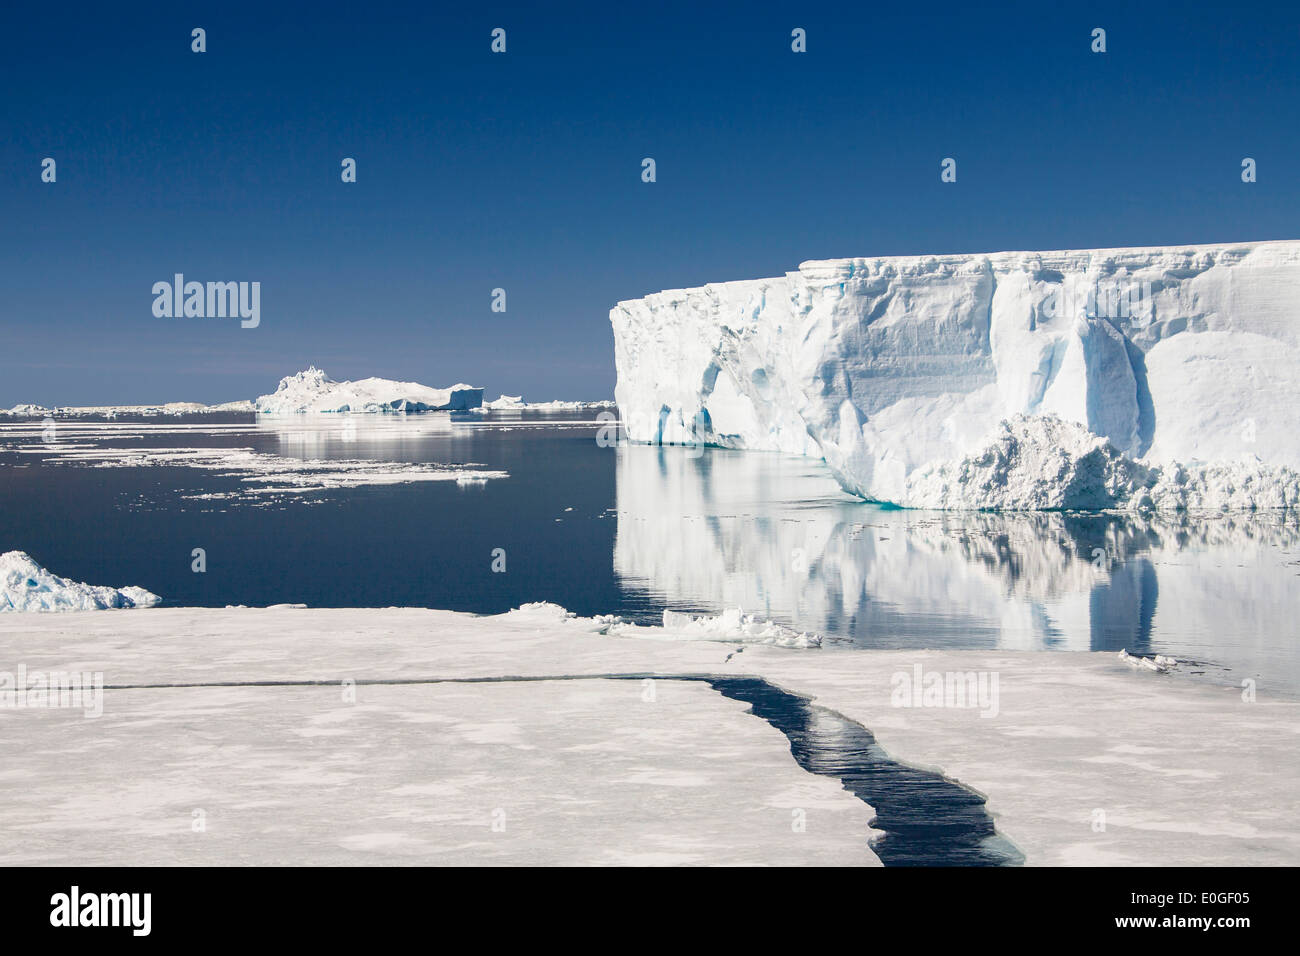 Iceberg, iceberg tabulari, Antartico Suono, Mare di Weddell, Antartide Foto Stock